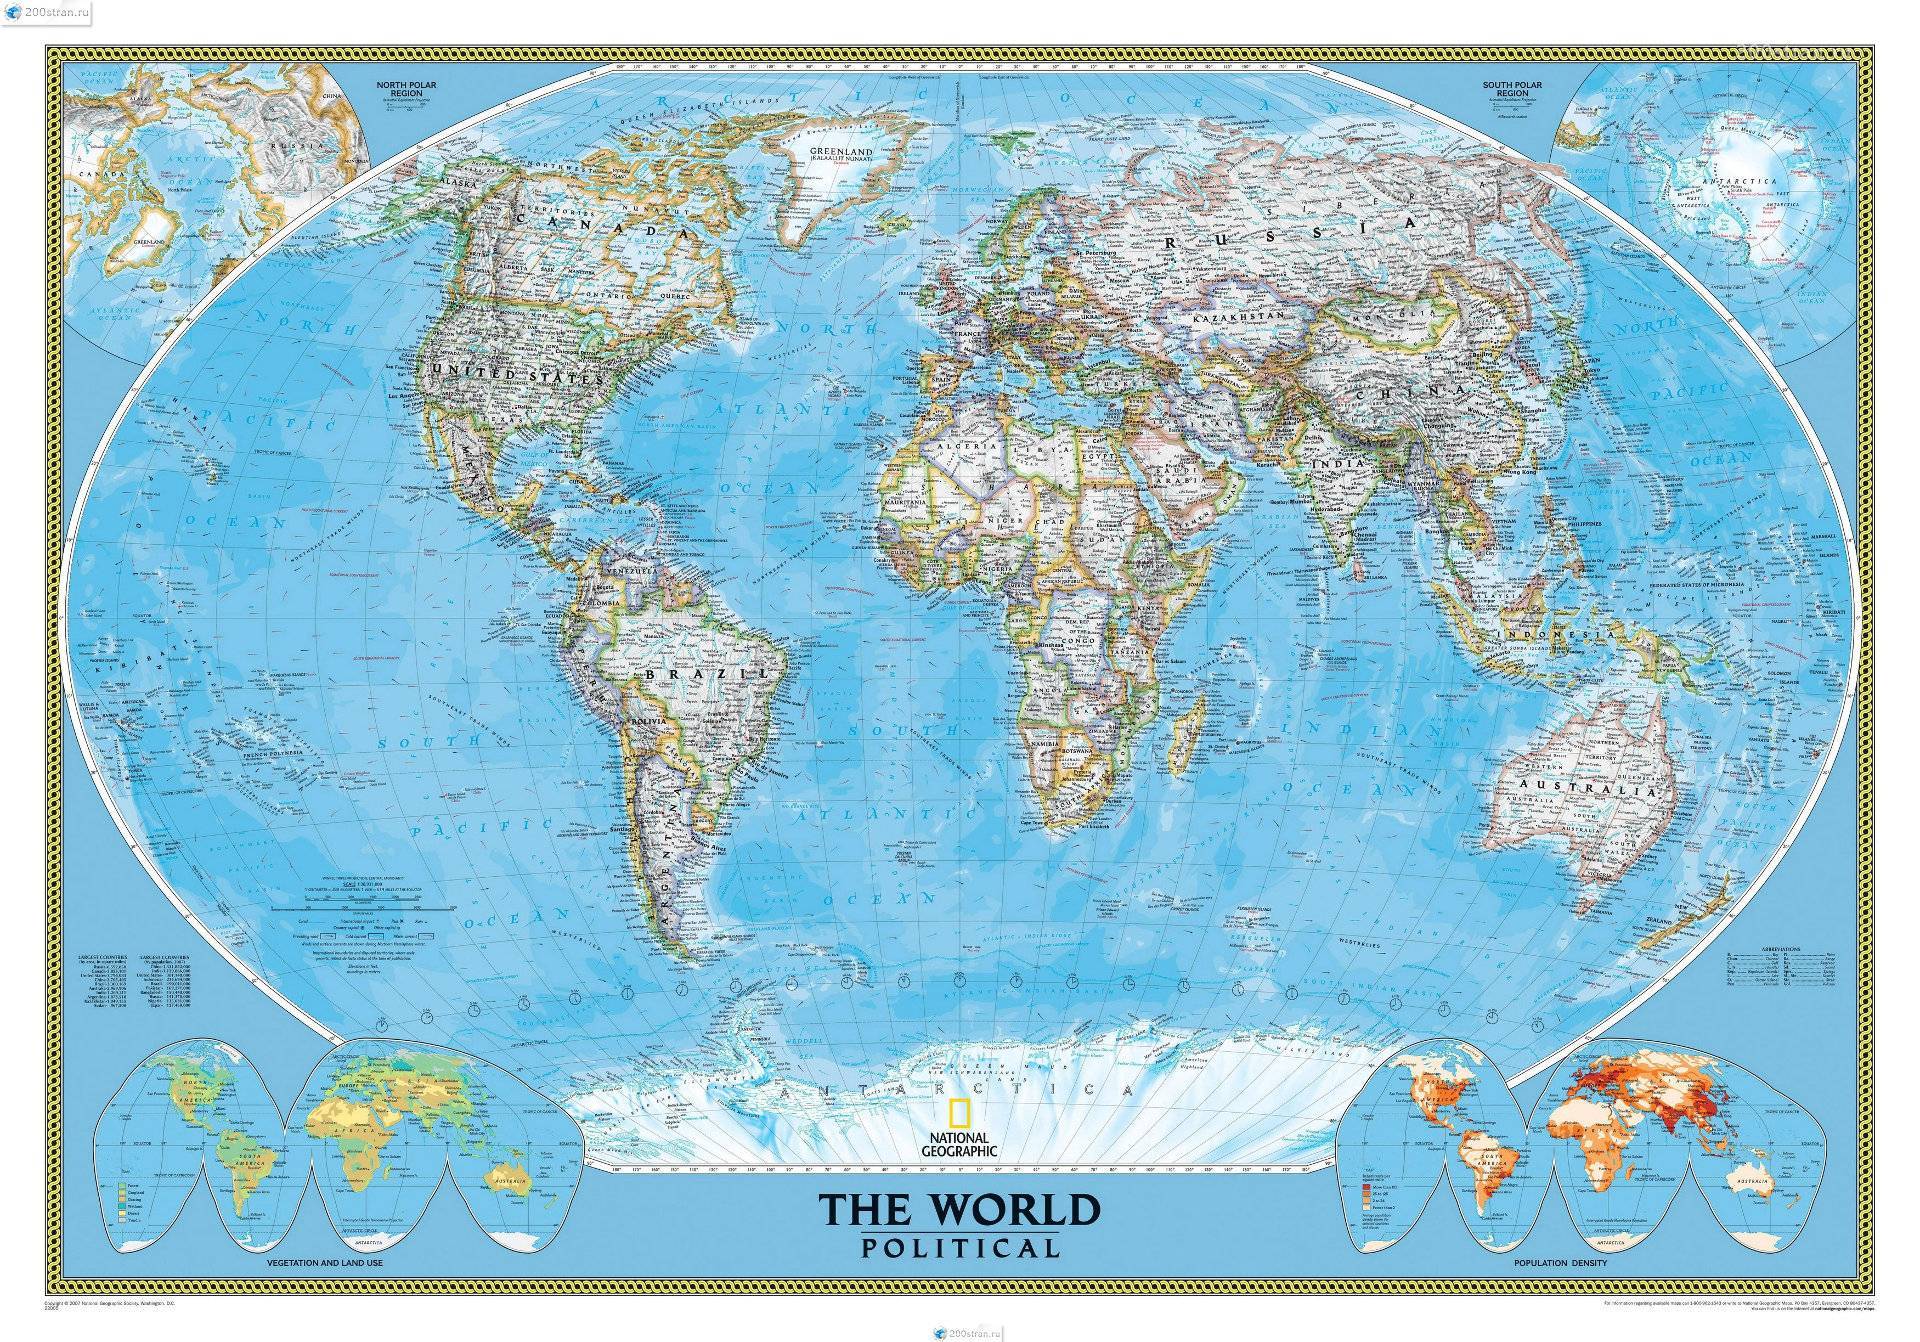 Реальная карта мира без искажений онлайн